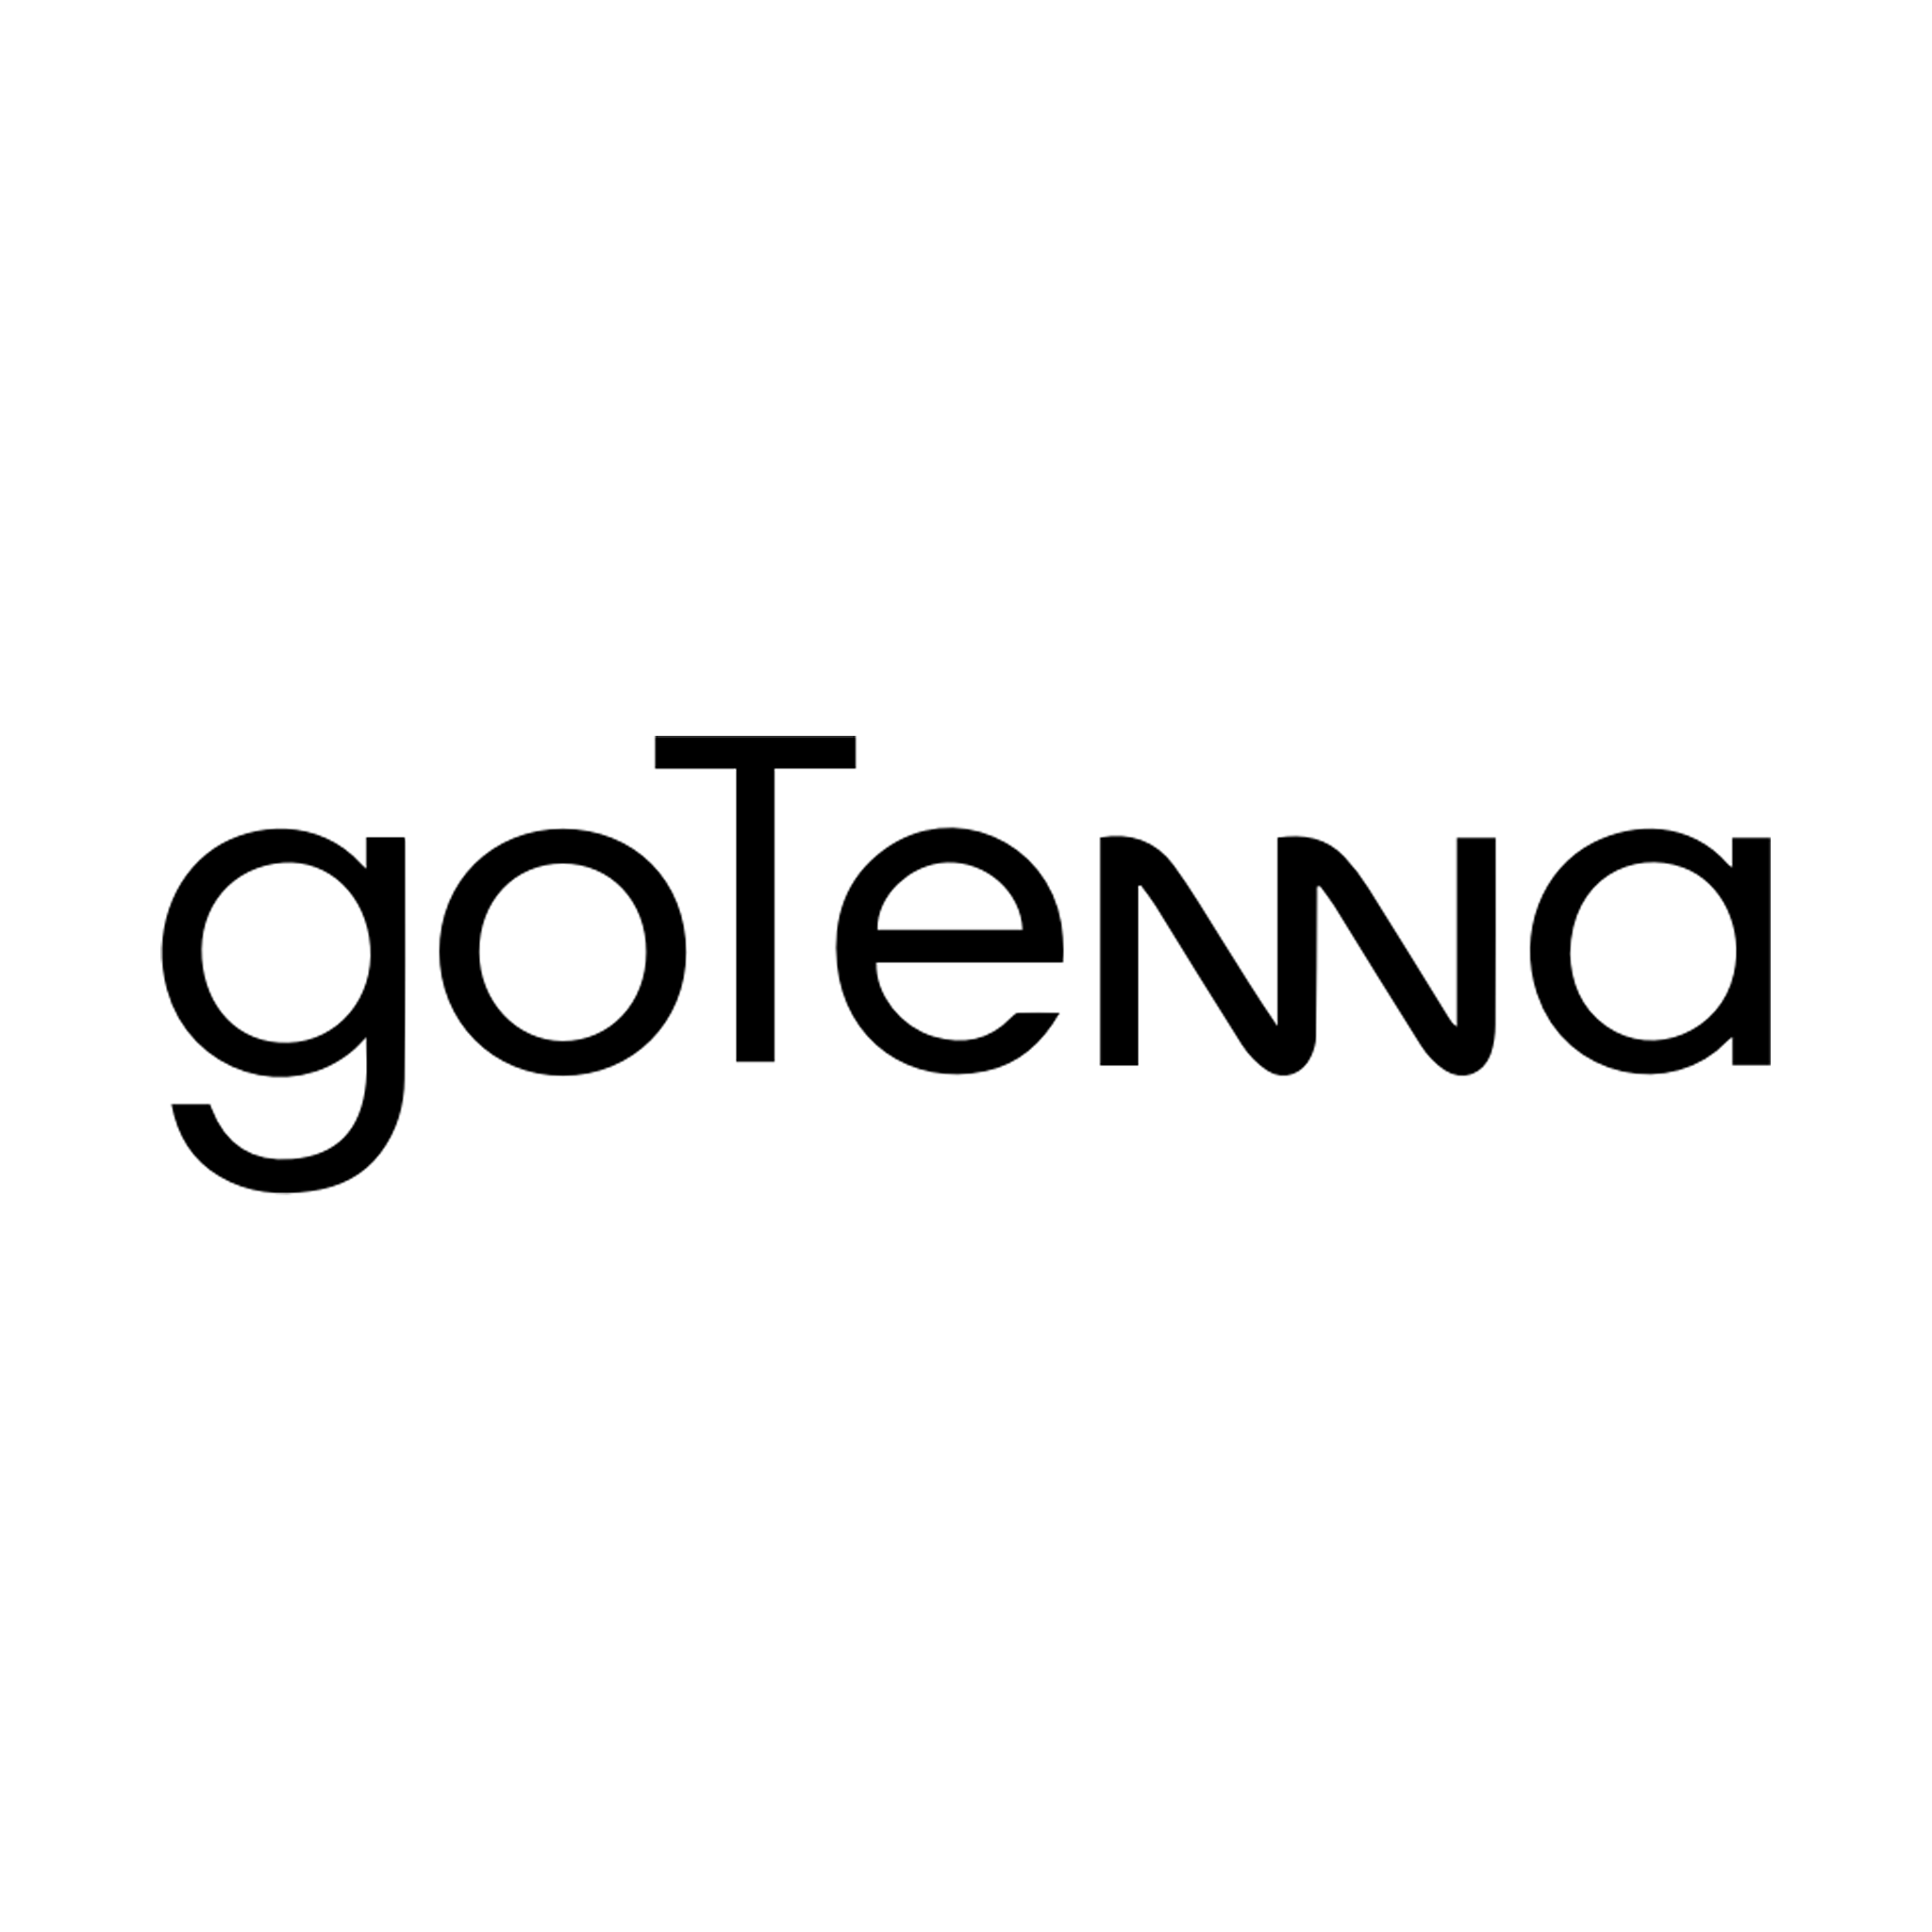 gotenna.com